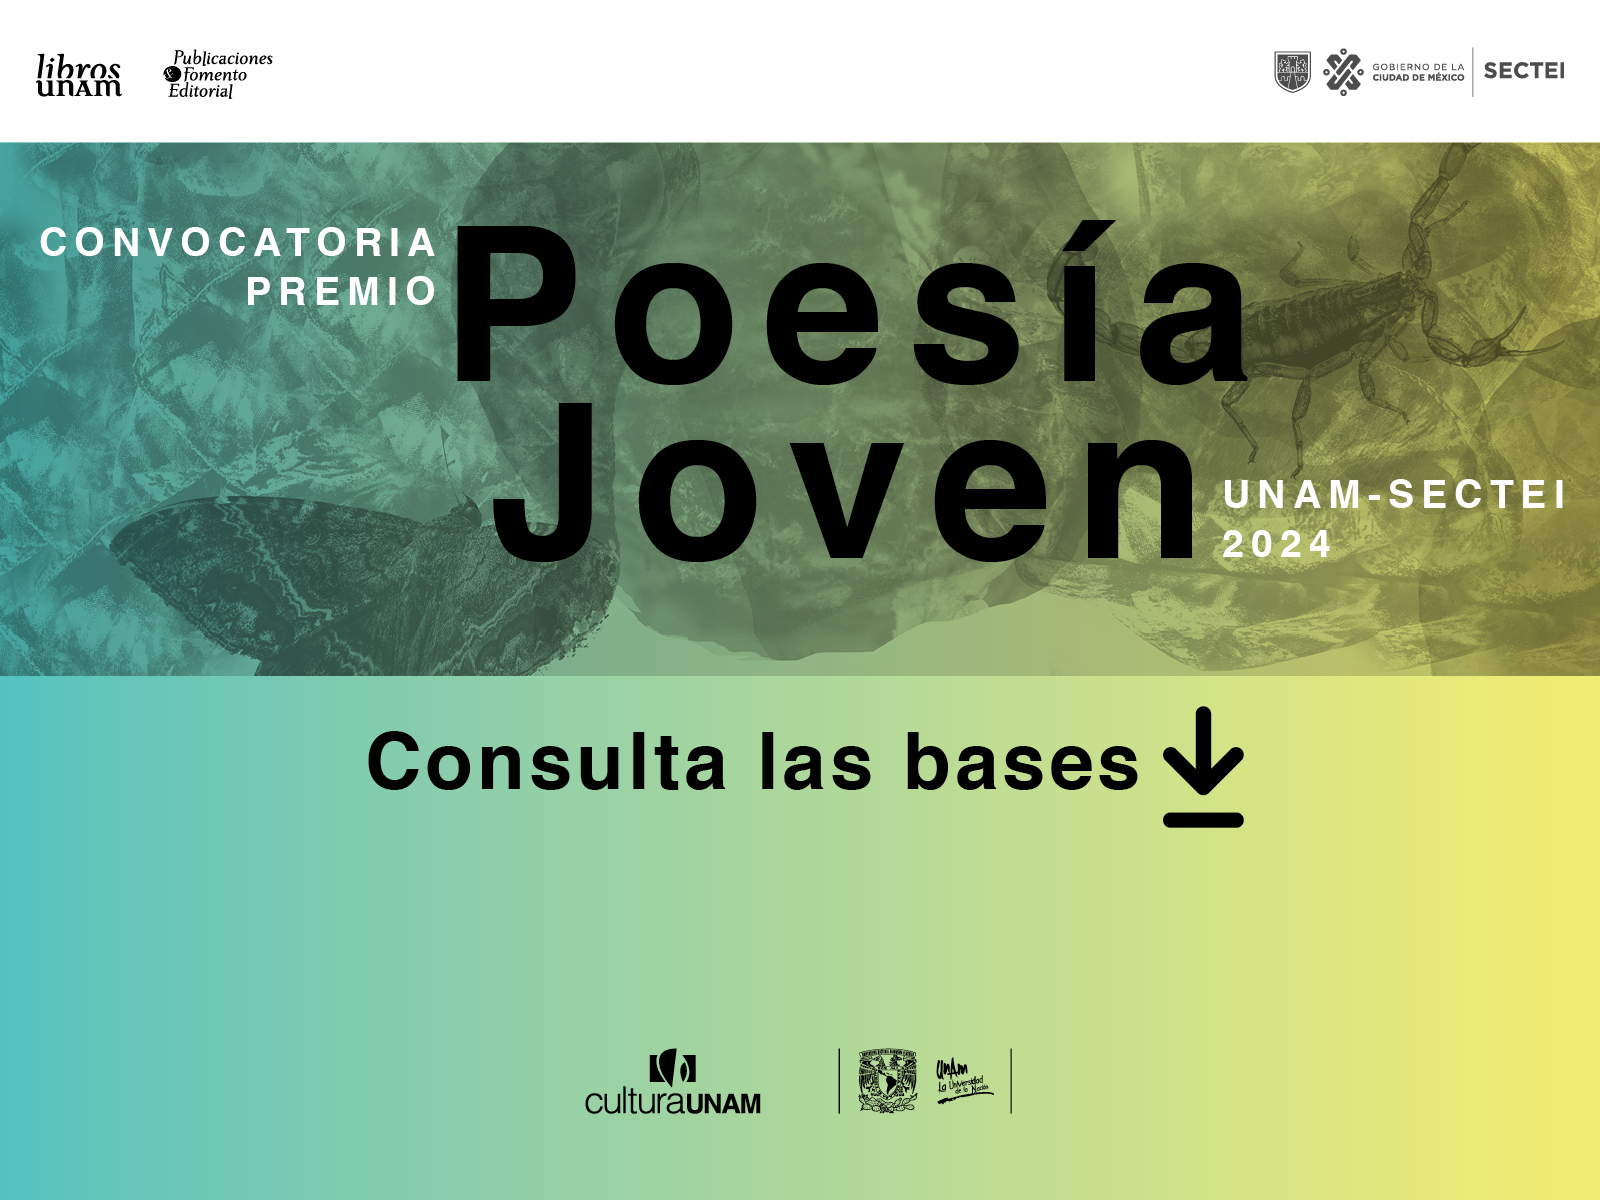  Convocatoria Poesía Joven 2024 - Libro UNAM